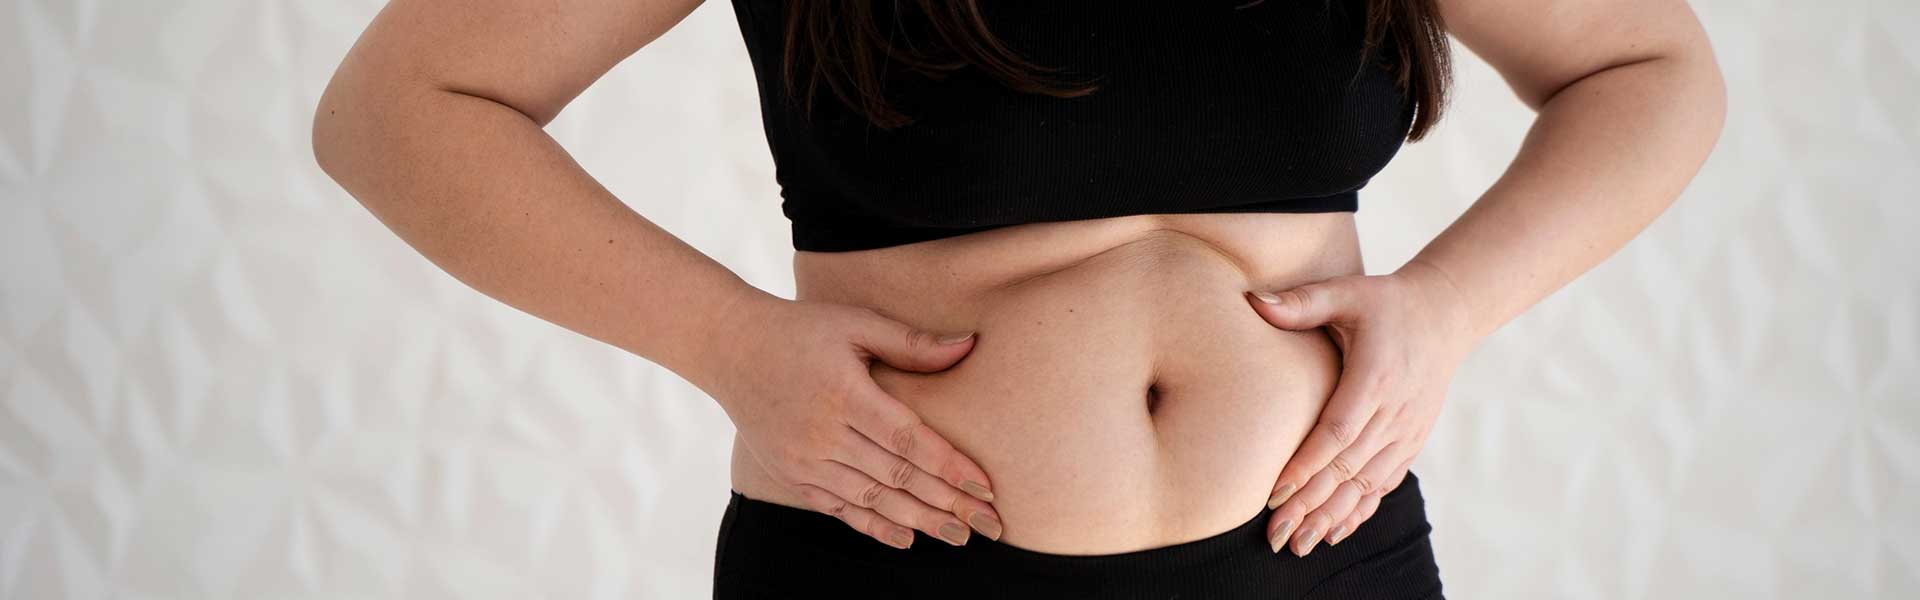 Mudanças na rotina que ajudam a reduzir a gordura abdominal